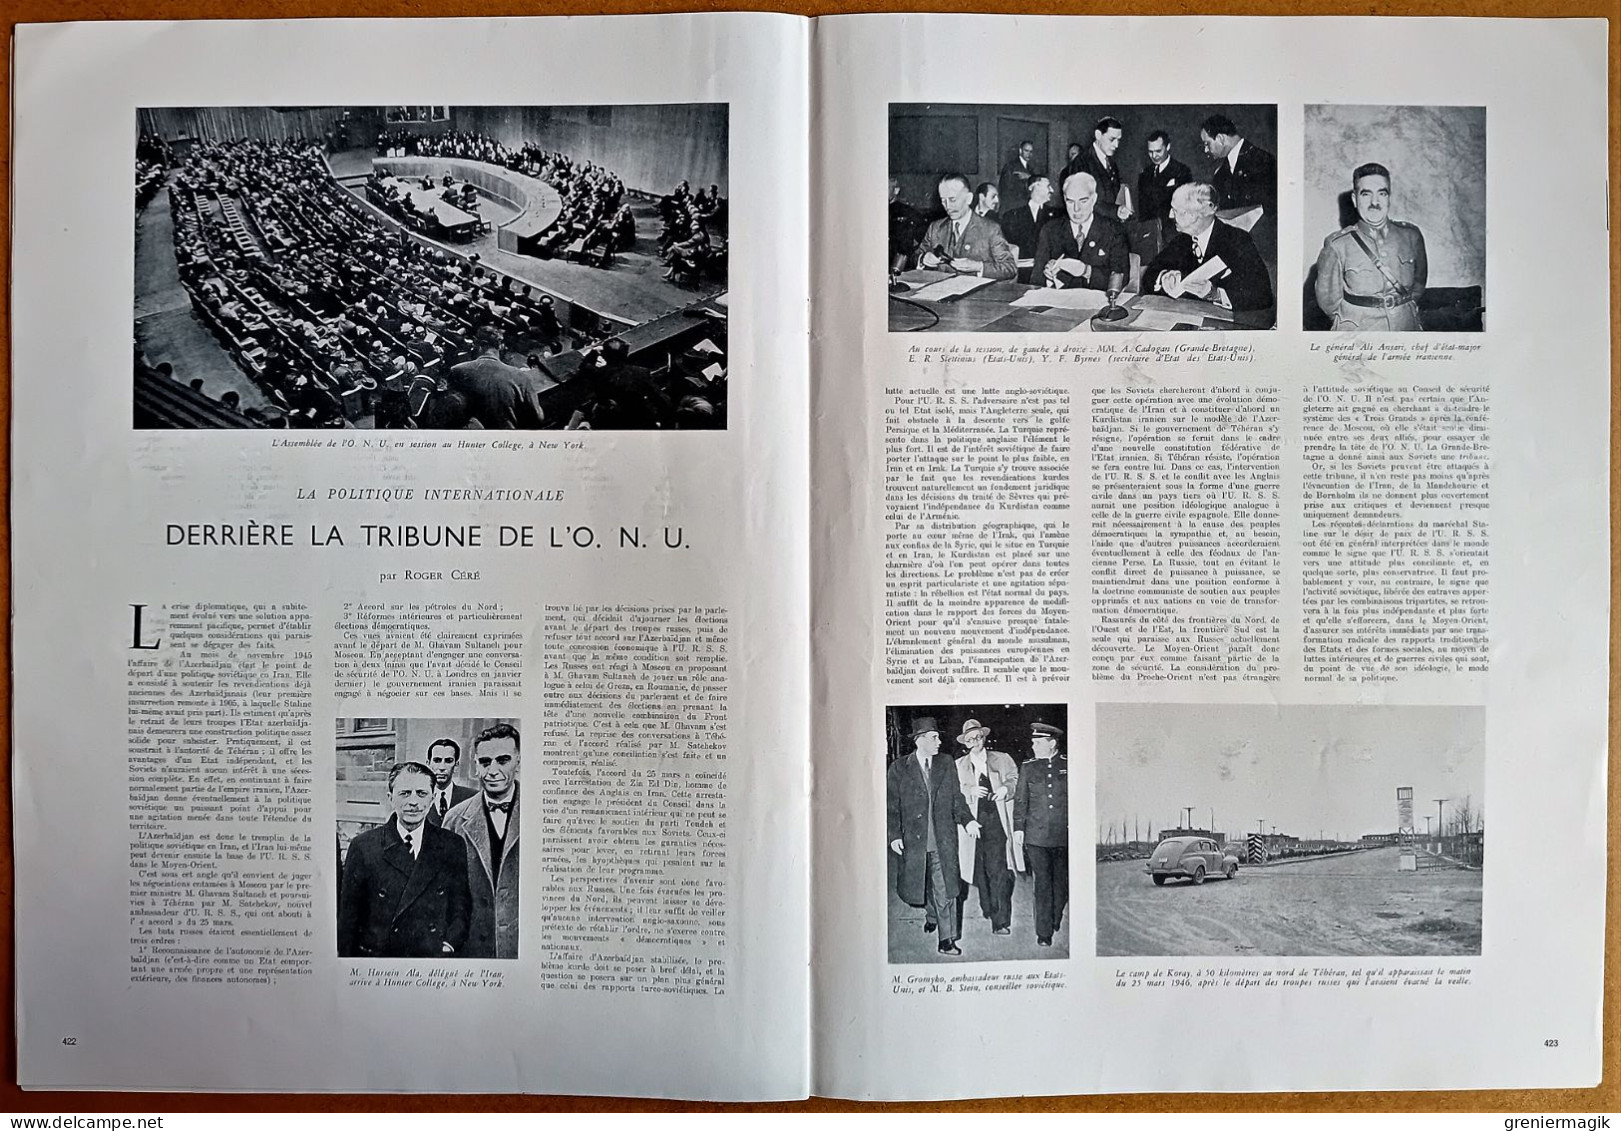 France Illustration N°29 20/04/1946 Lyon/Pourquoi...Allemagne bombe atomique (Rjukan)/Ile du Diable/ONU/Blum aux USA